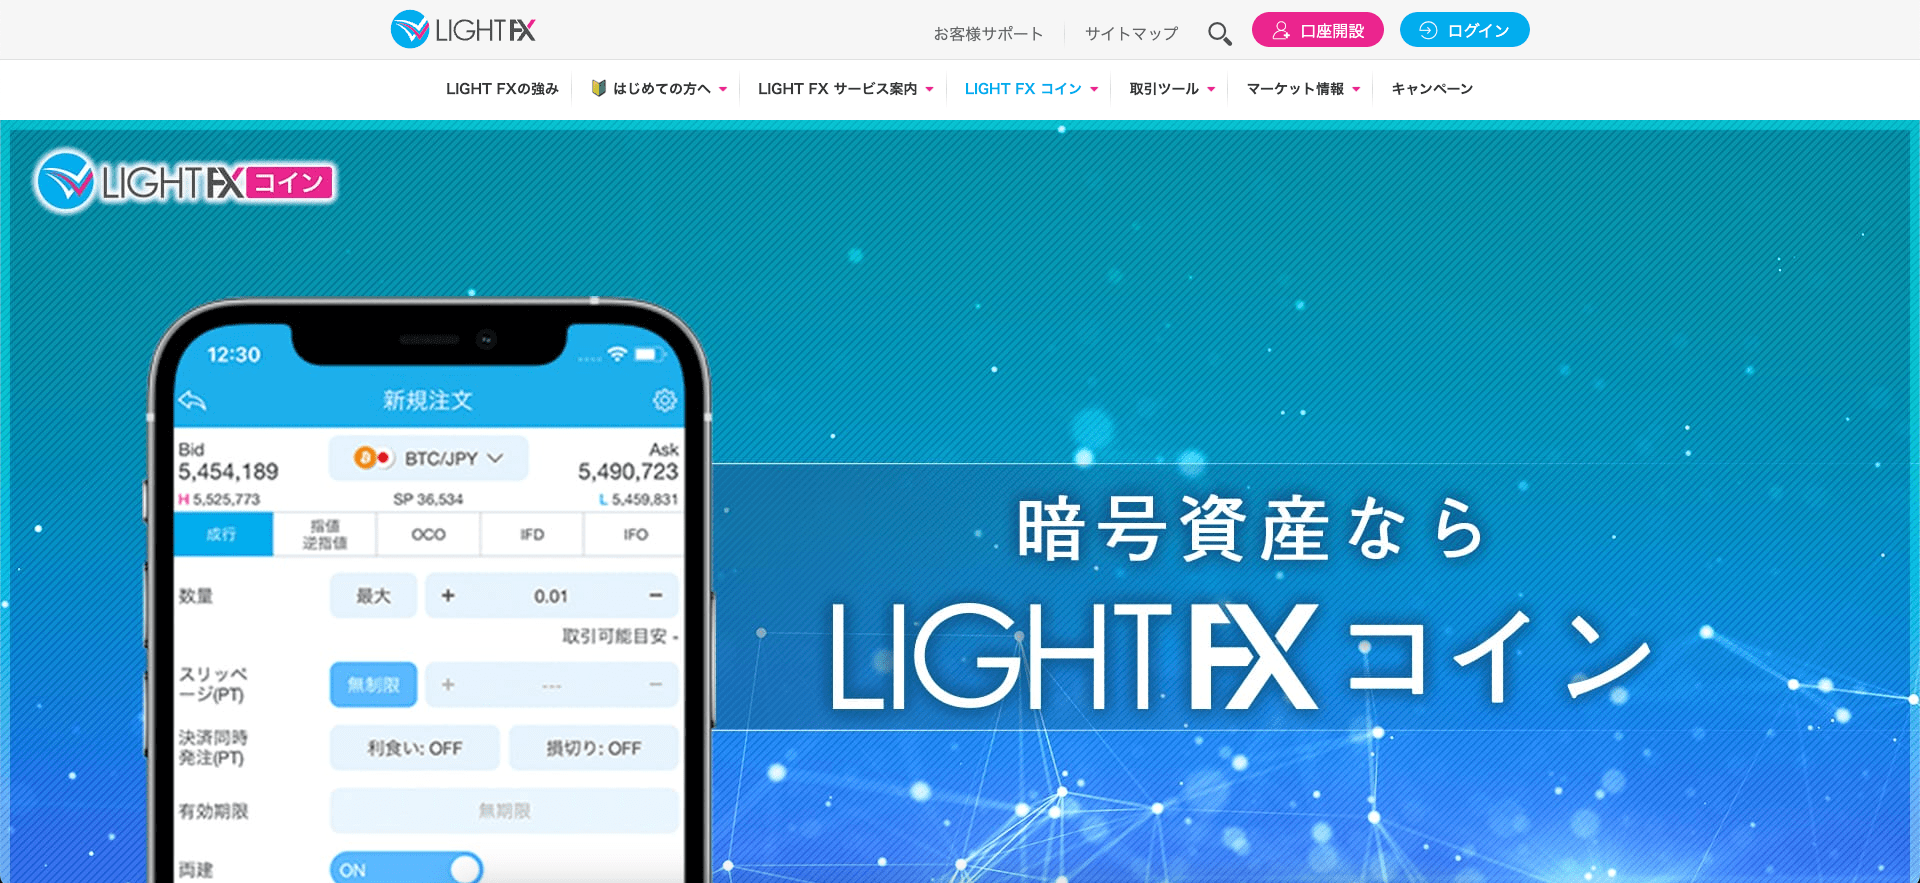 LIGHT FX コイン 公式サイト